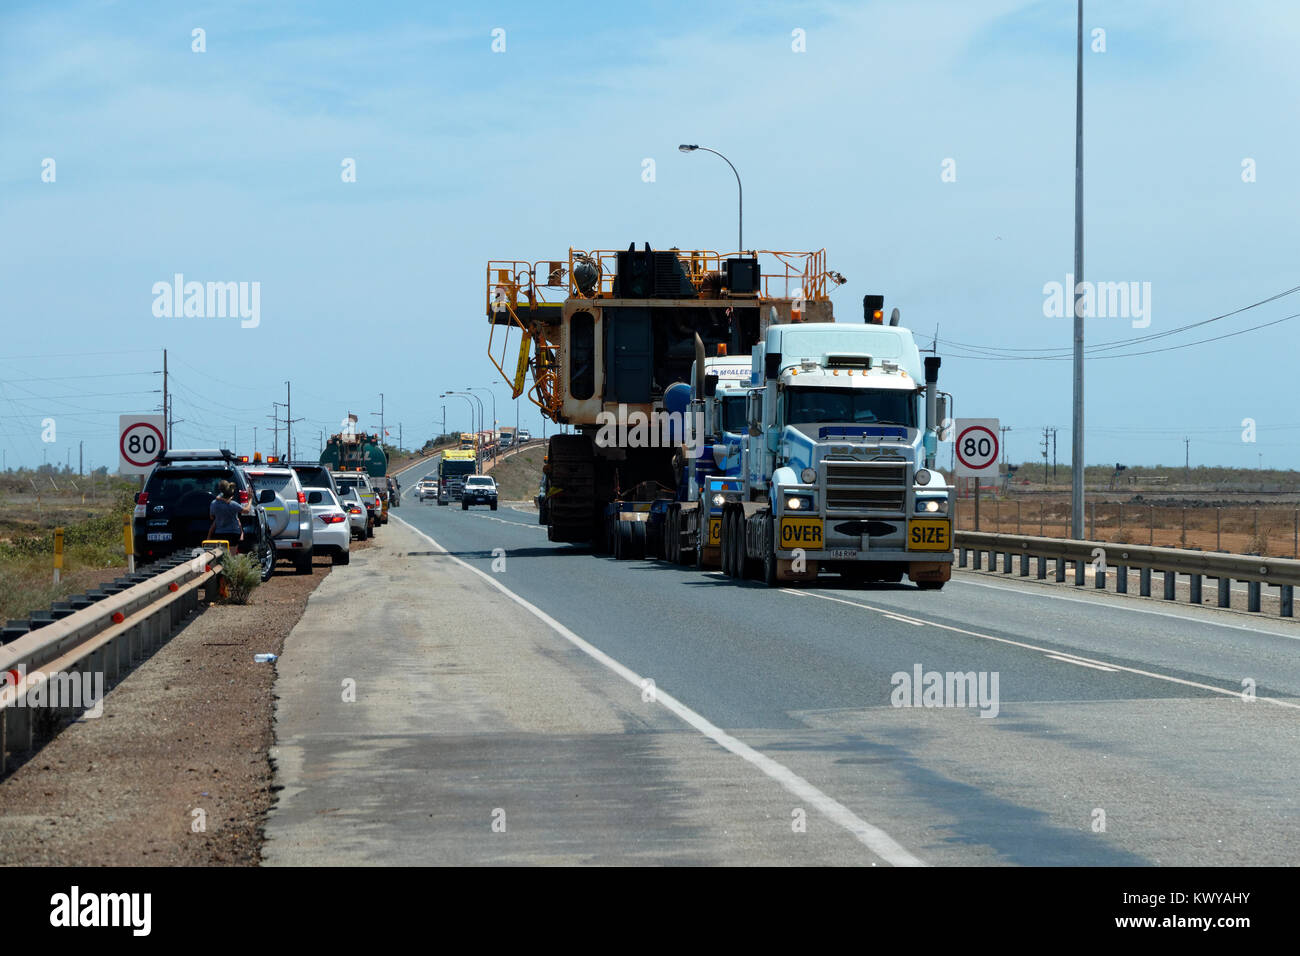 Sovradimensionare carico trasportato da 2 prime mover camion, Port Hedland, Australia occidentale Foto Stock